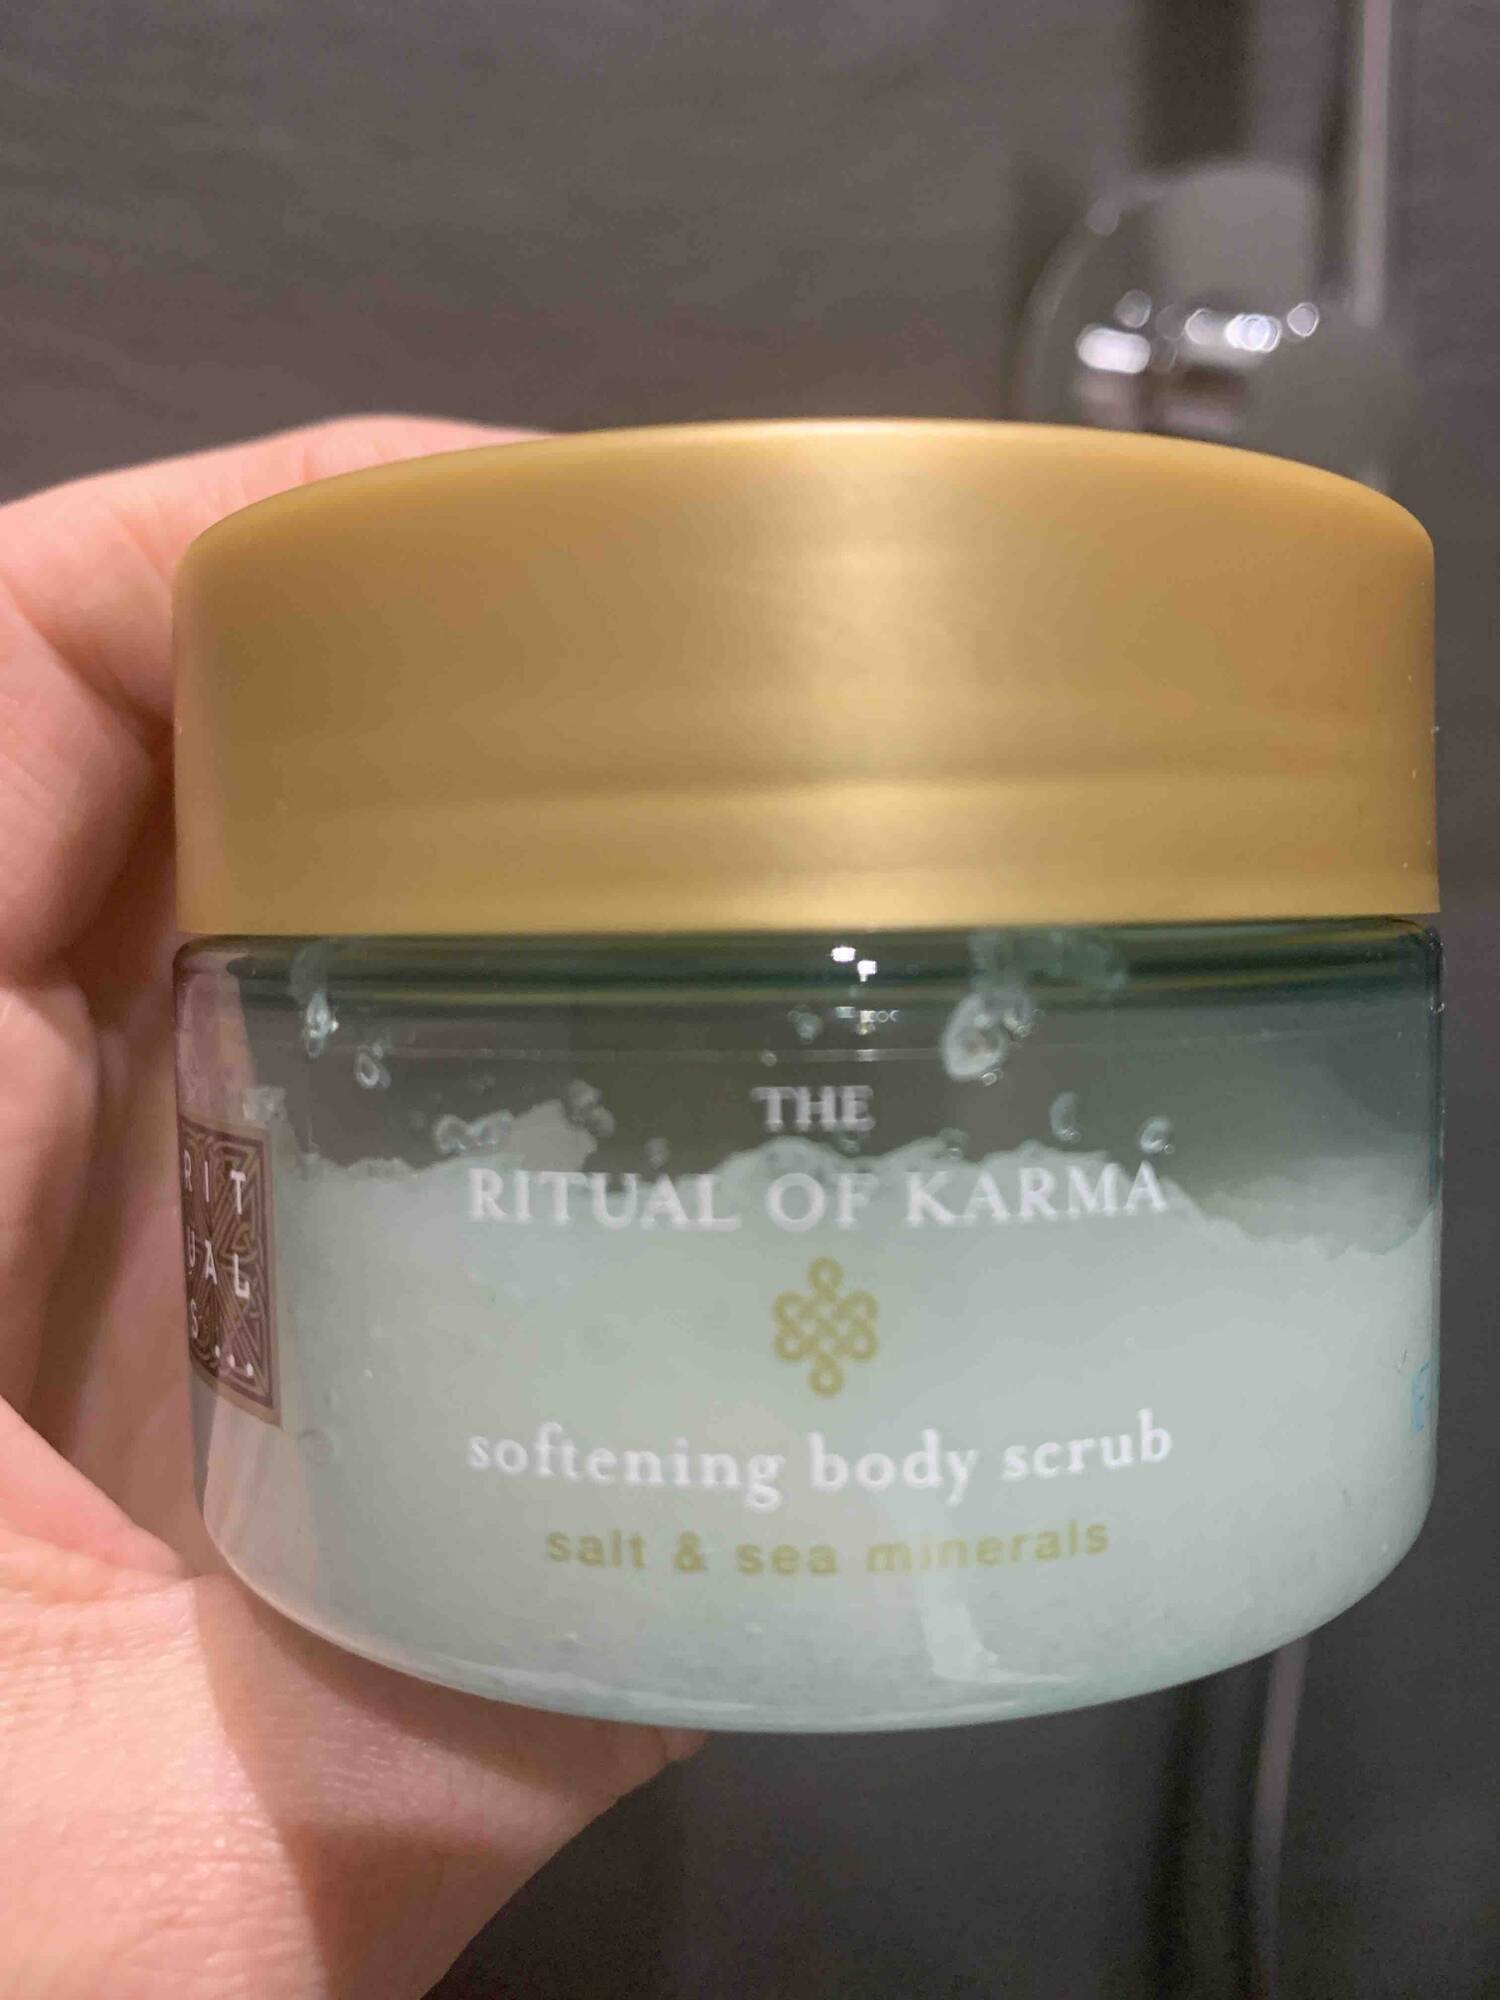 RITUALS - The Ritual of Karma - Softening body scrub